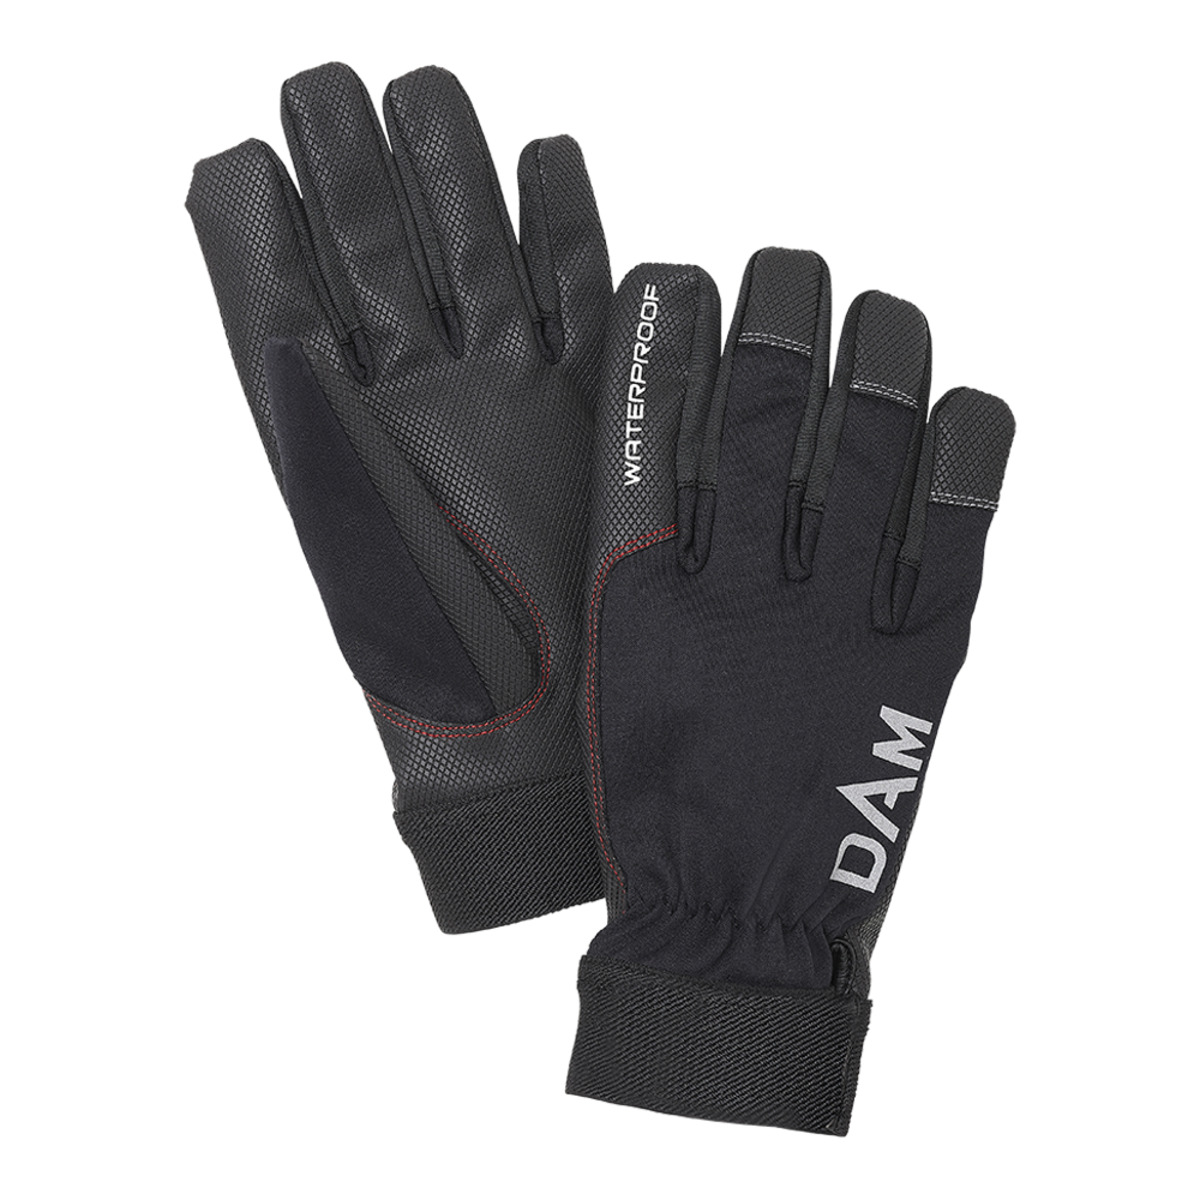 Dam Dryzone Glove - L BLACK